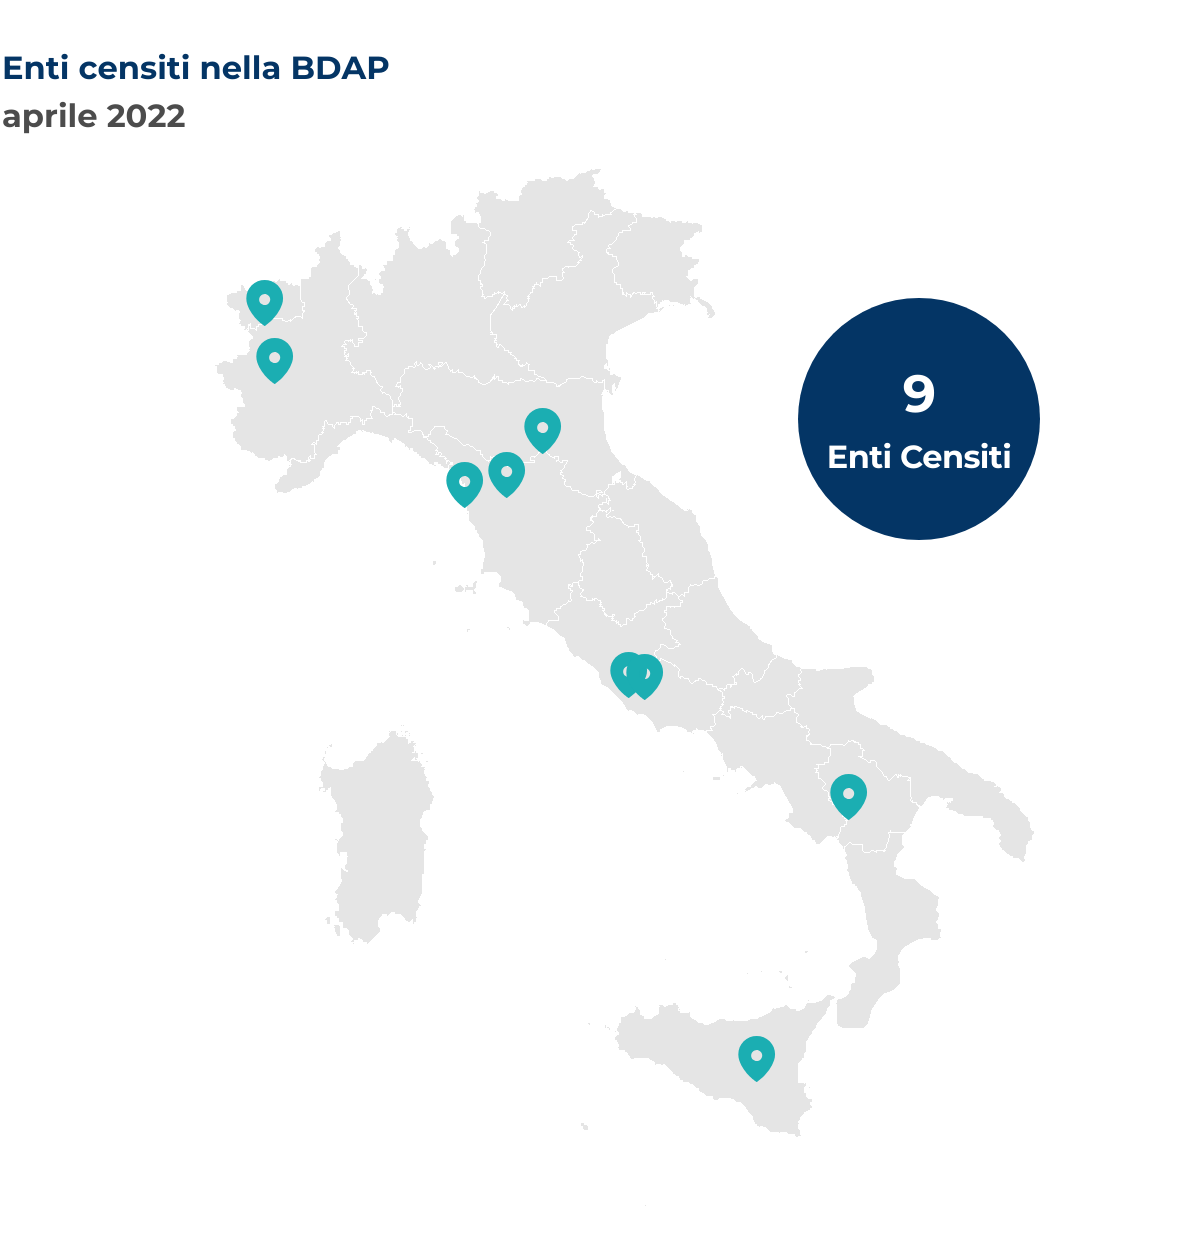 Mappa dell’Italia che mostra la localizzazione per Comune degli enti censiti nella BDAP nel mese di aprile 2022.